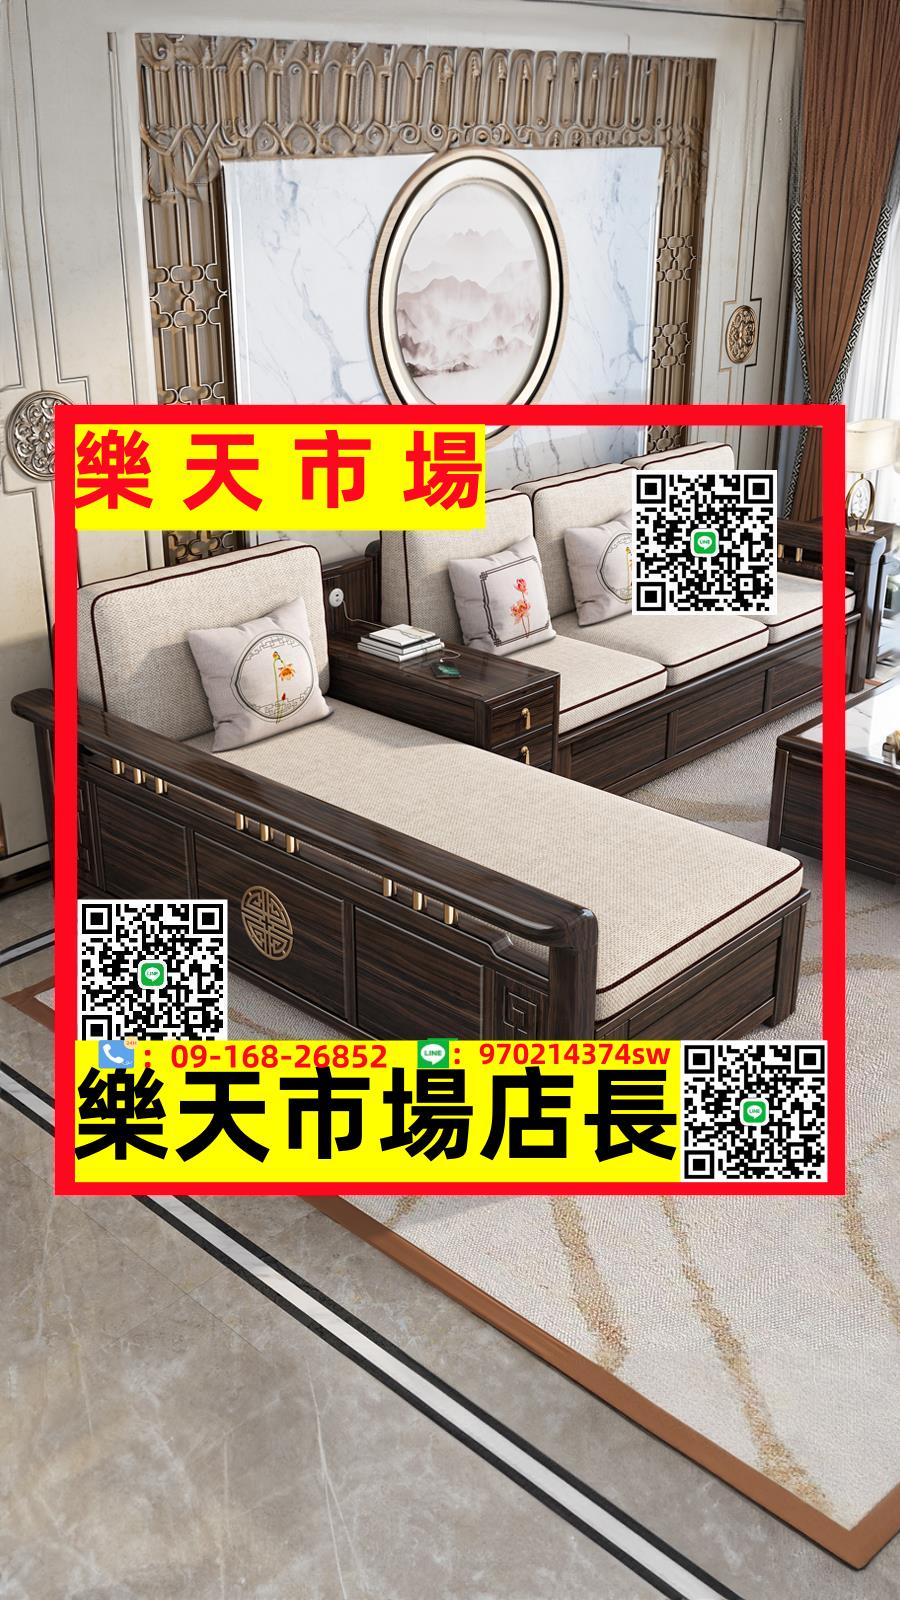 新中式烏金木全實木客廳全套木質沙發小戶型簡約冬夏兩用儲物家具